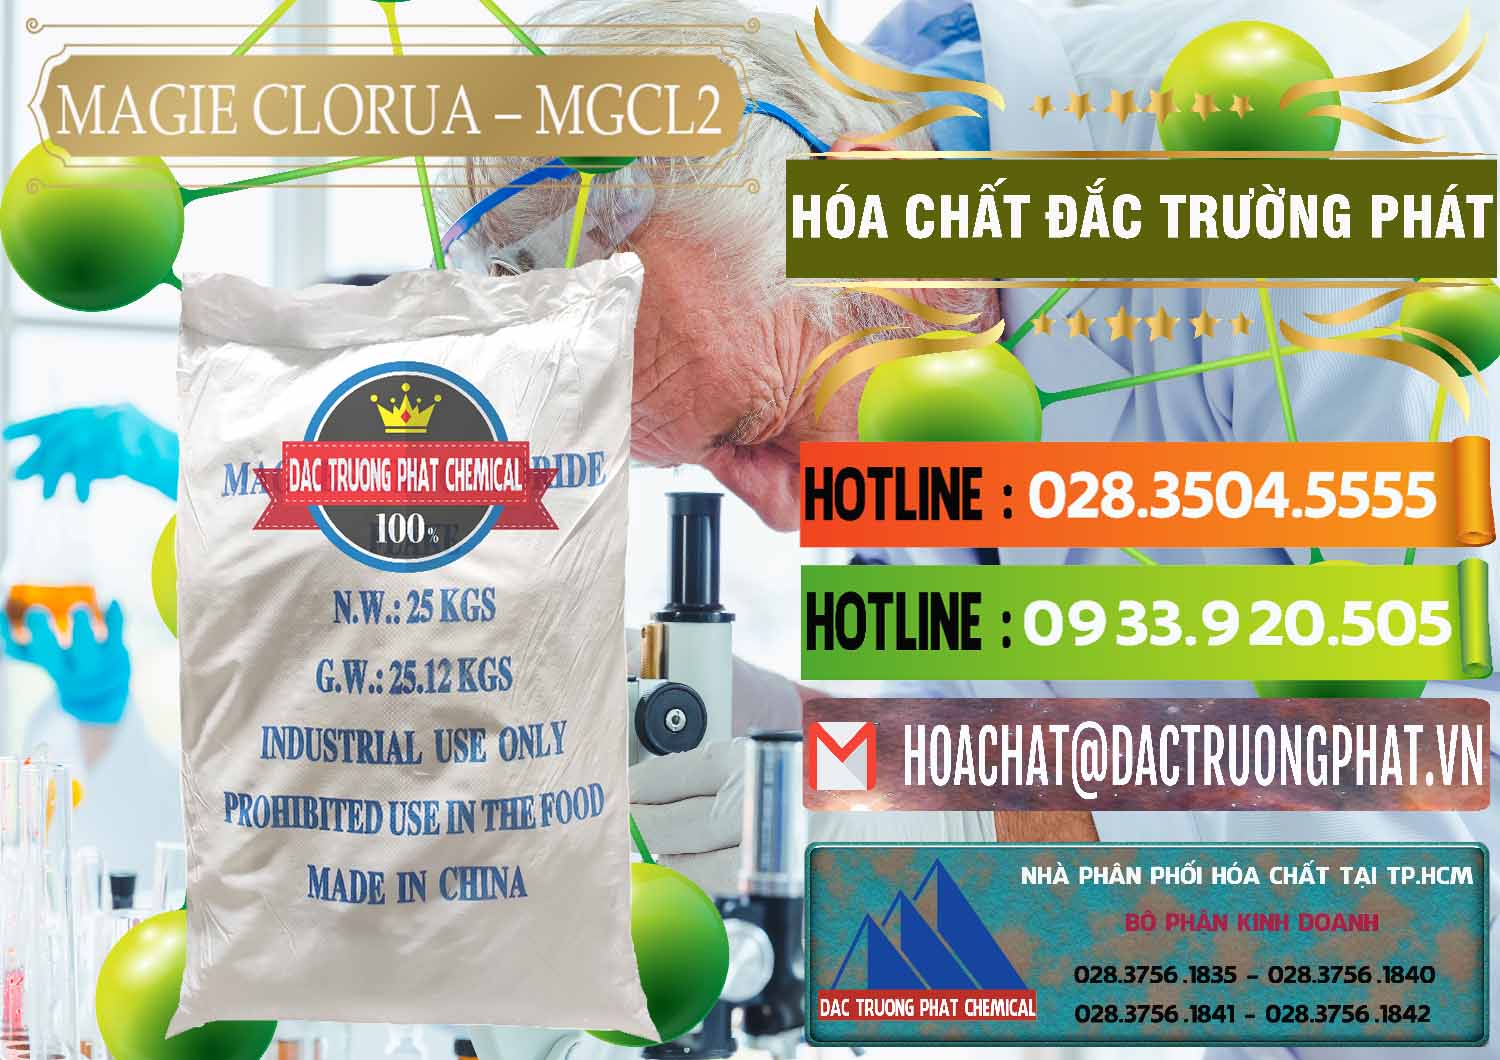 Đơn vị bán ( cung ứng ) Magie Clorua – MGCL2 96% Dạng Vảy Trung Quốc China - 0091 - Cung cấp & phân phối hóa chất tại TP.HCM - cungcaphoachat.com.vn